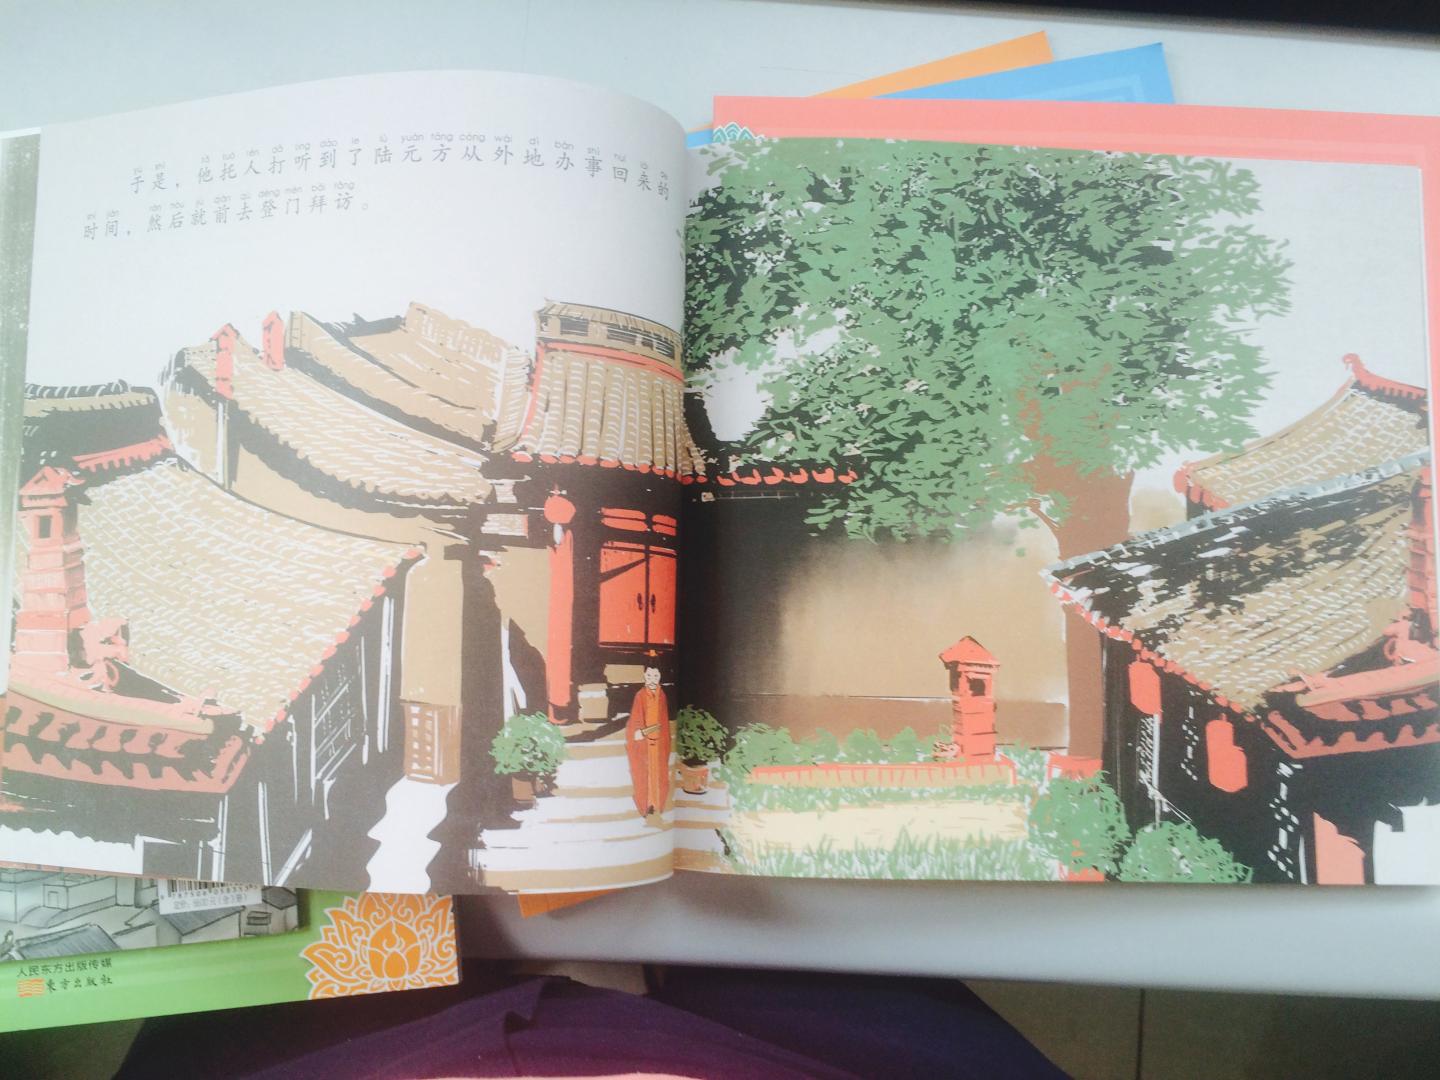 给小孩买了一套，让孩子了解中华五千文化的精髓，从小做个有礼有信的孩子。翻开看了一下，颜色精美，人物画得生动形像，还是绿色环保印刷，出版社用心了，推荐！！！